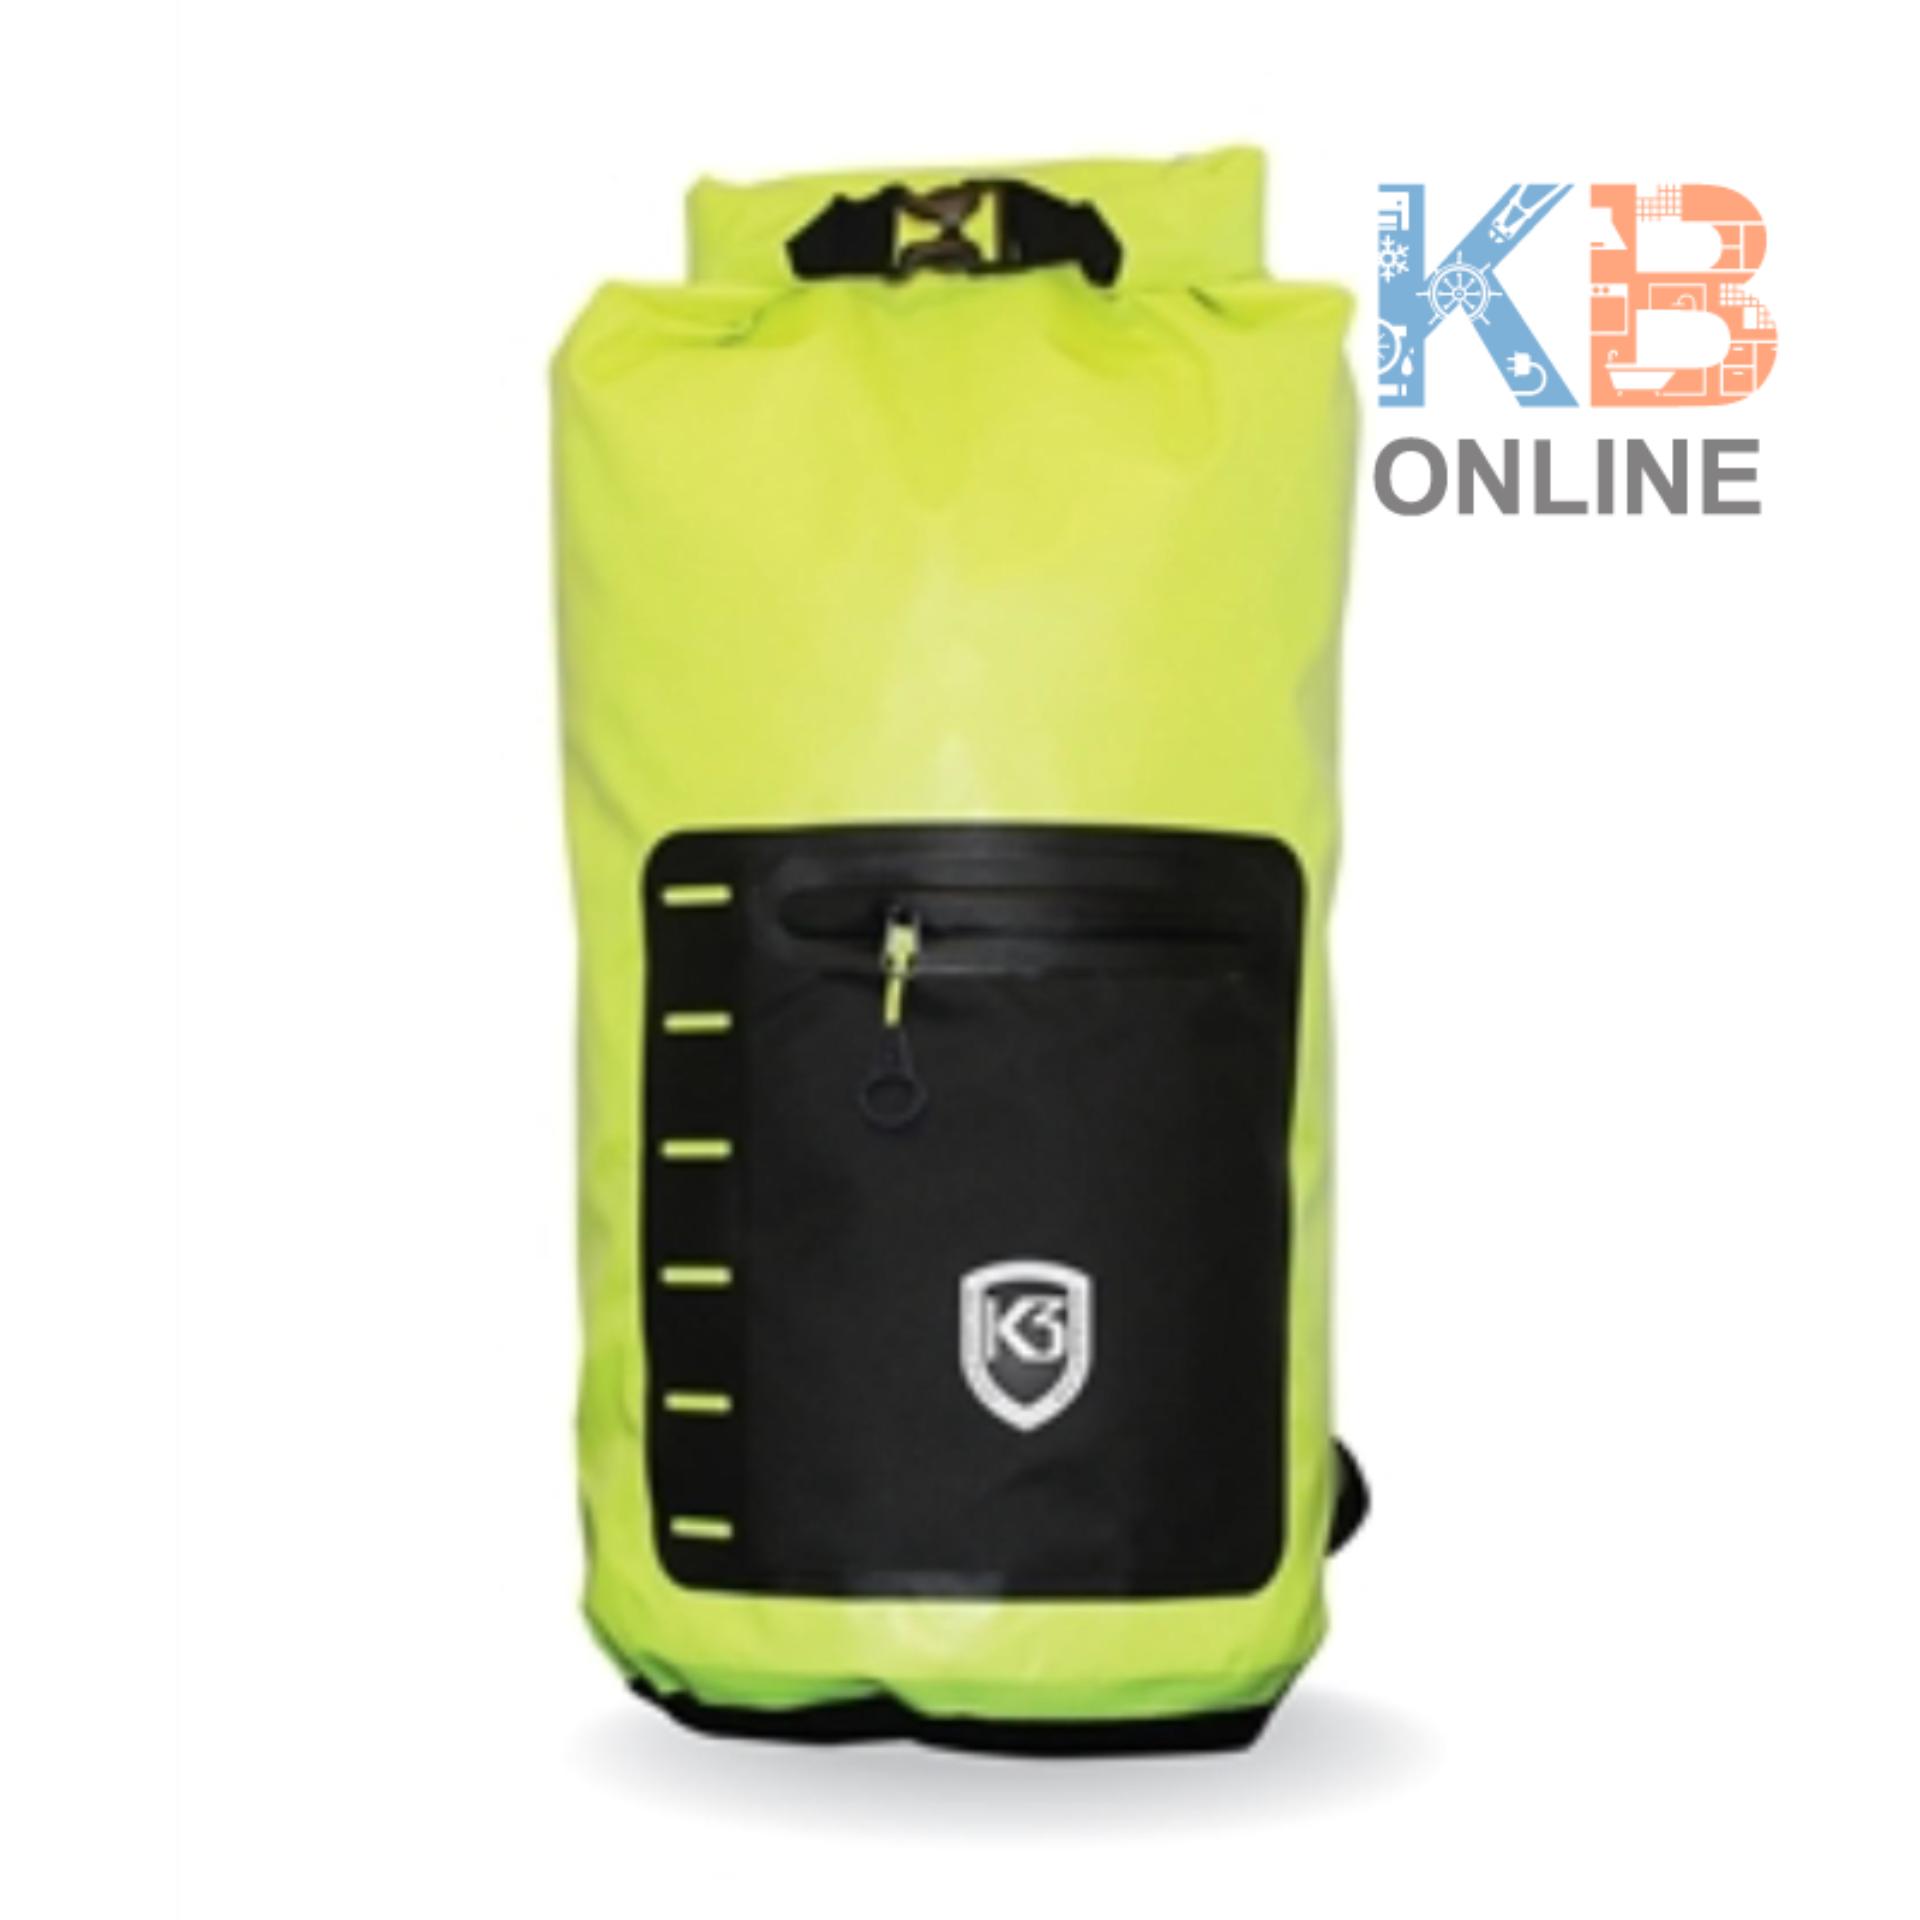 กระเป๋ากันน้ำ K3 20L Waterpoof สีเหลือง นีออน, สีส้ม, สีเทา